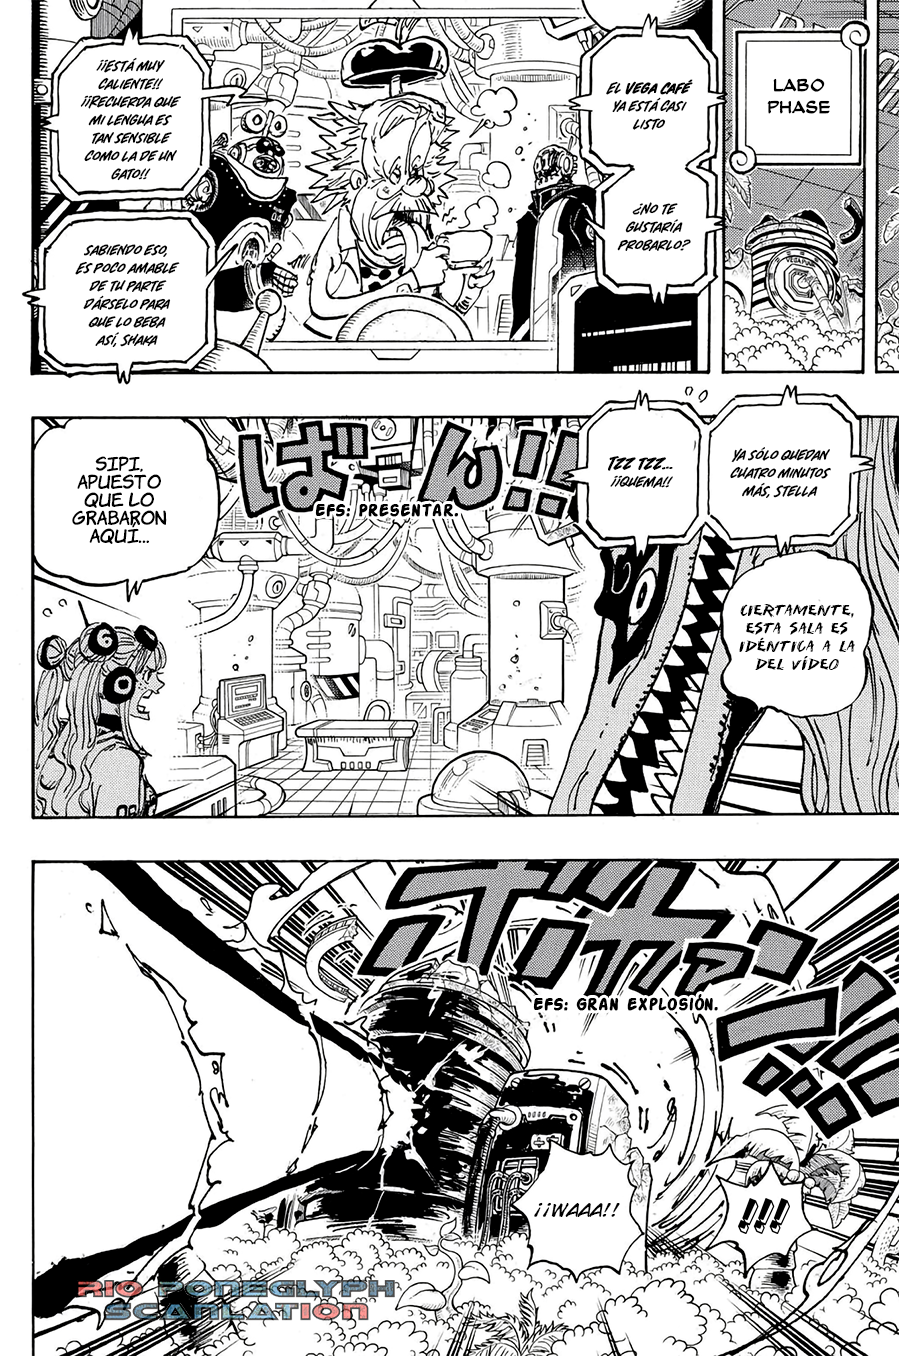 piece - One Piece Manga 1112 [Español] [Rio Poneglyph Scans] 05-2